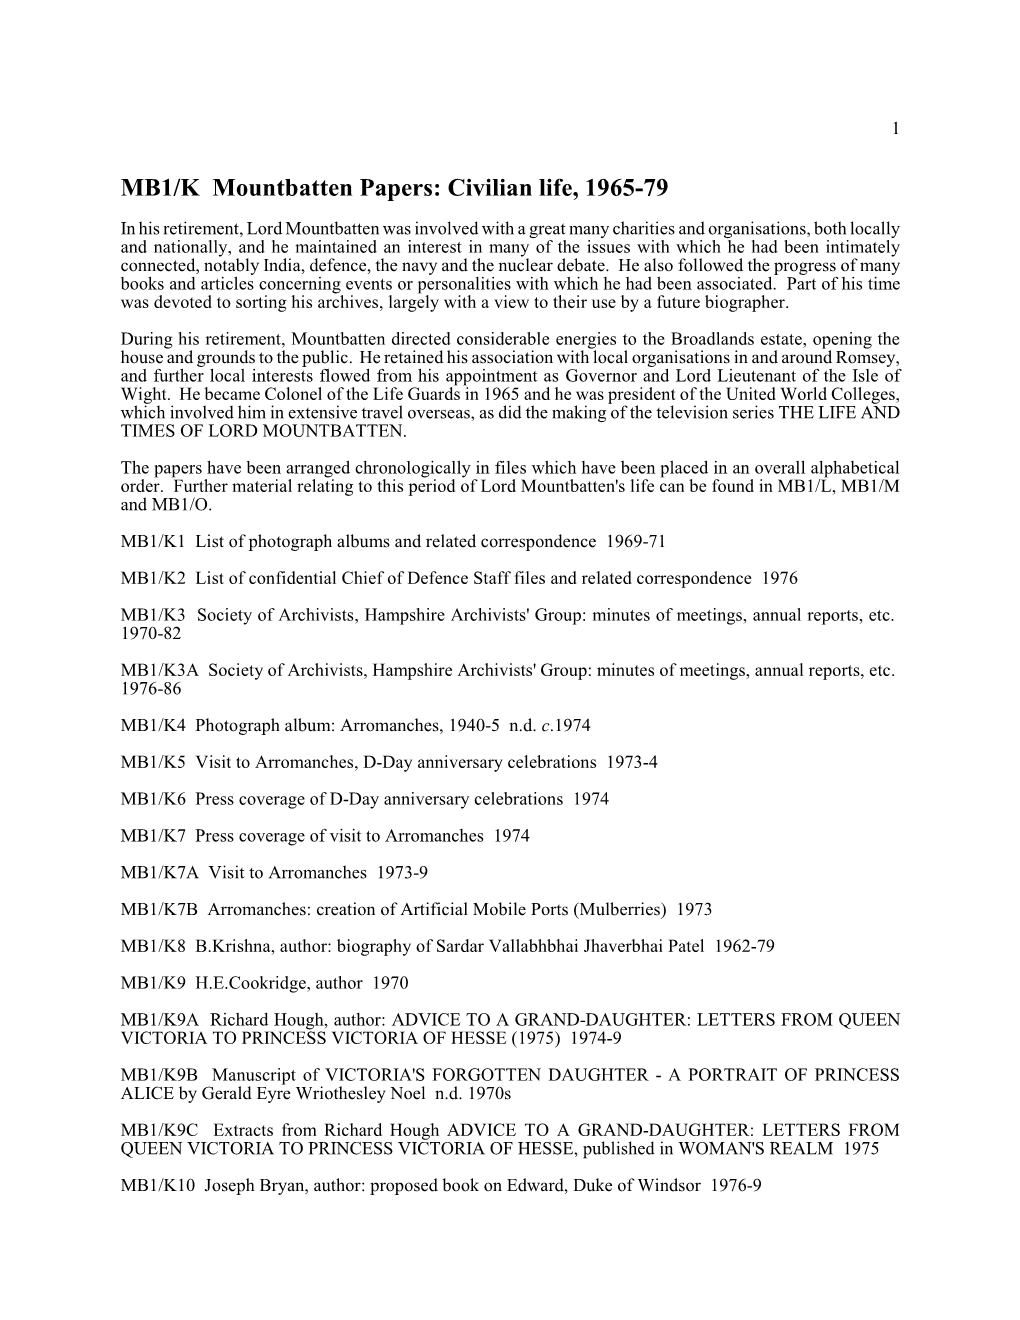 MB1/K Mountbatten Papers: Civilian Life, 1965-79